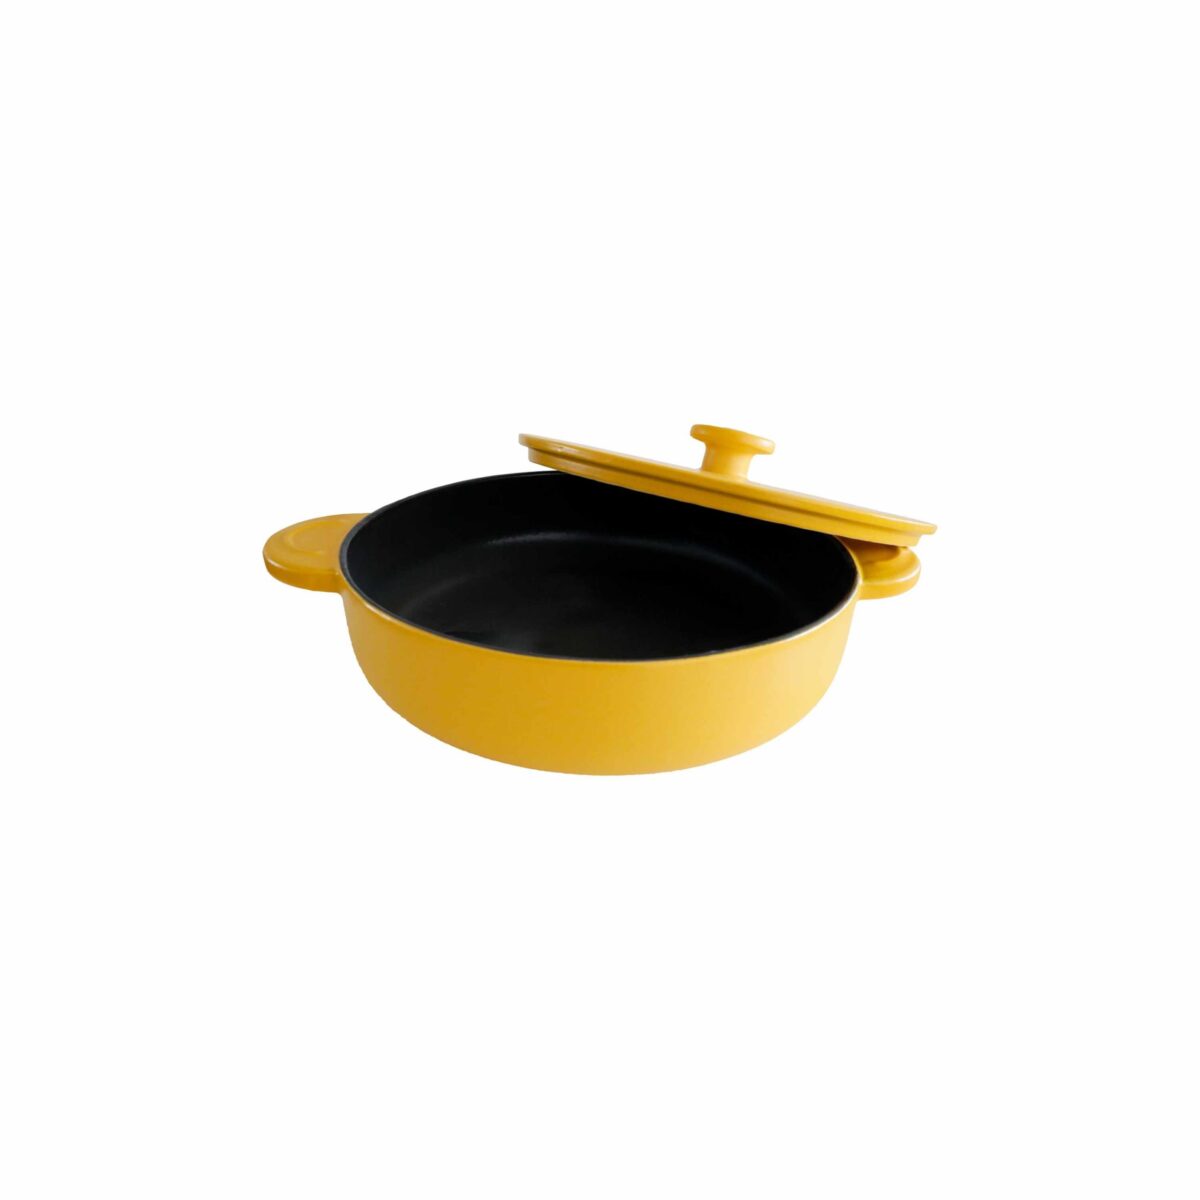 low casserole yellow ceramic free of toxics cacerola amarilla libre de tóxicos cerámica cocina saludable 1